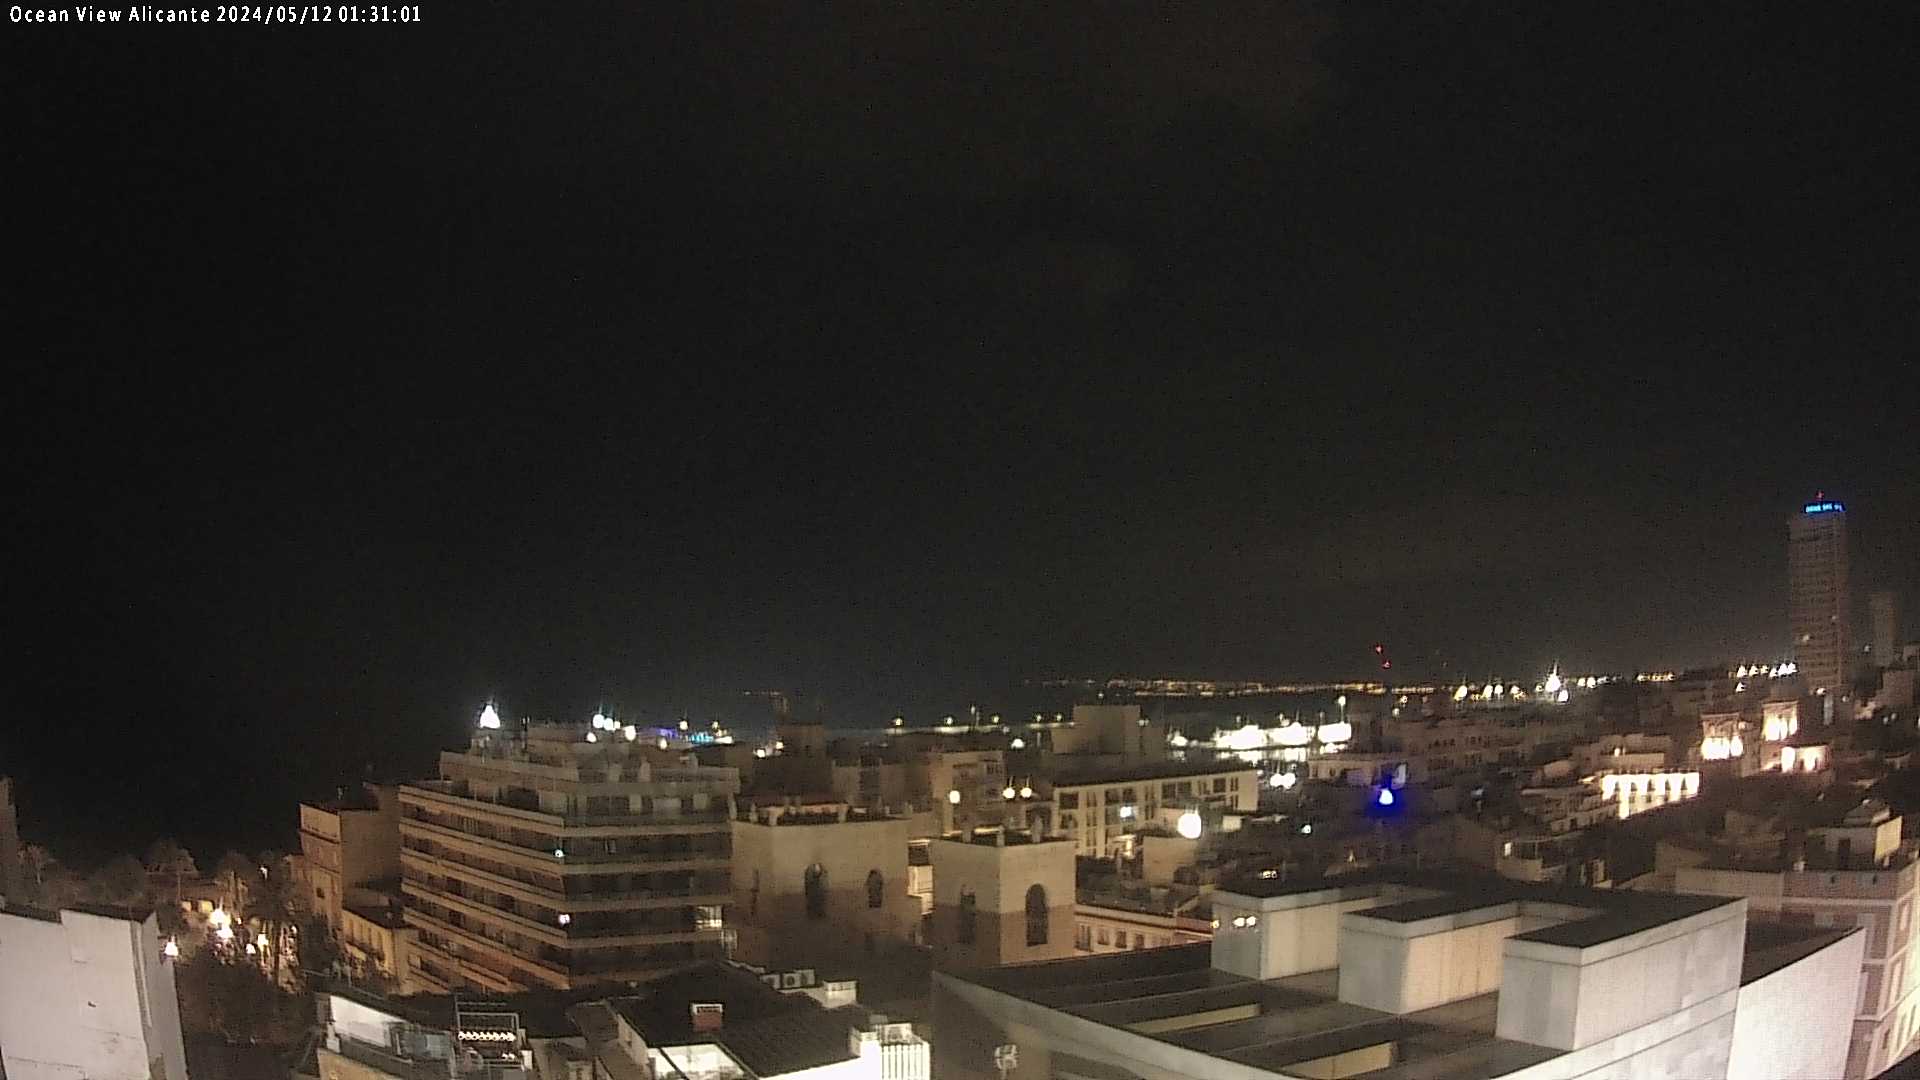 Alicante Fri. 01:31